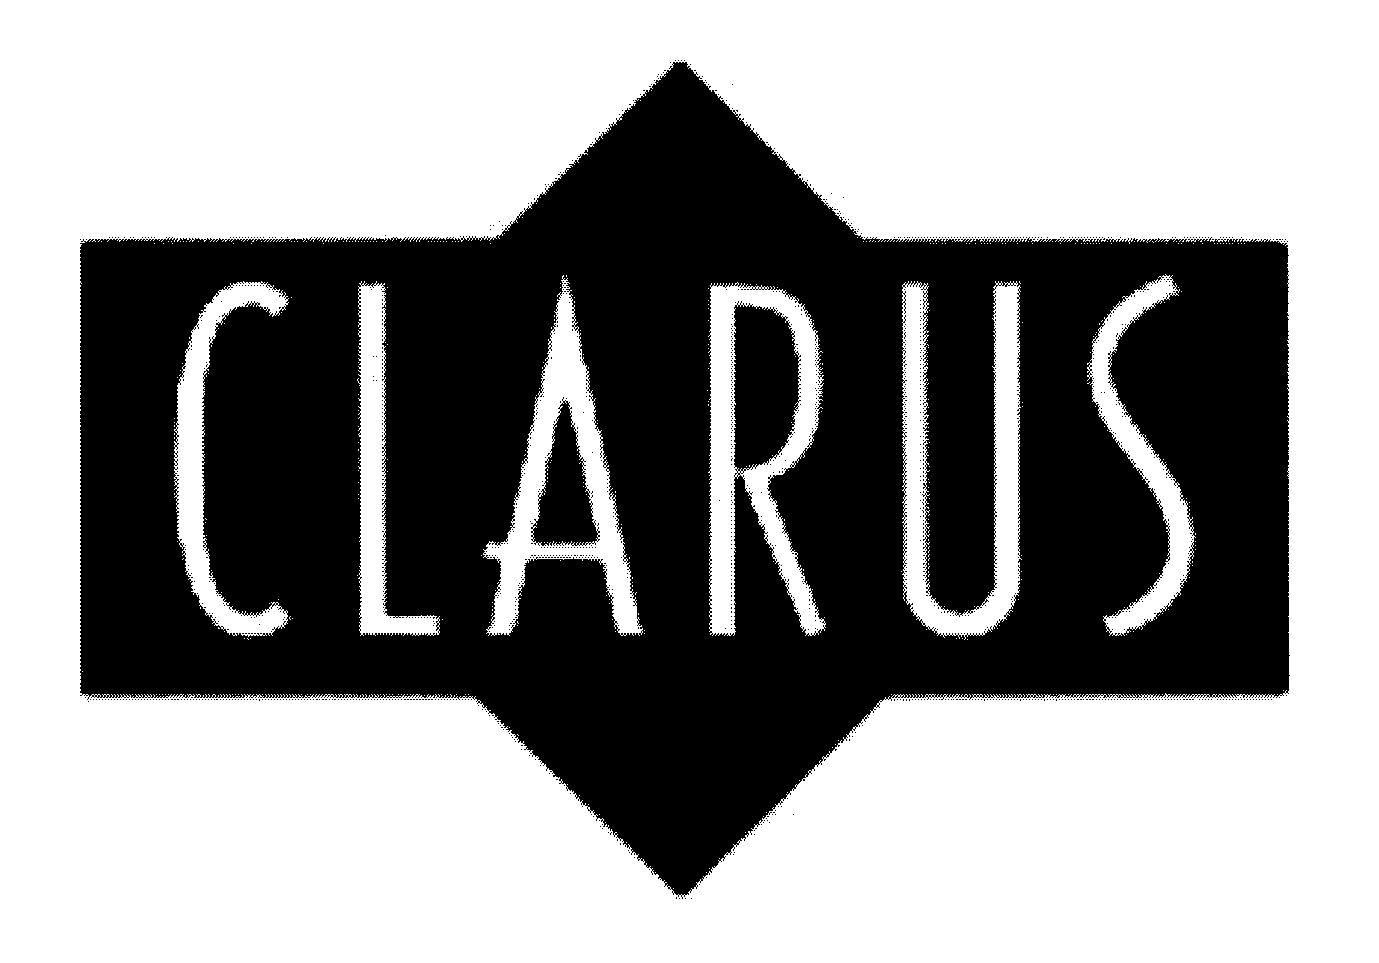 CLARUS